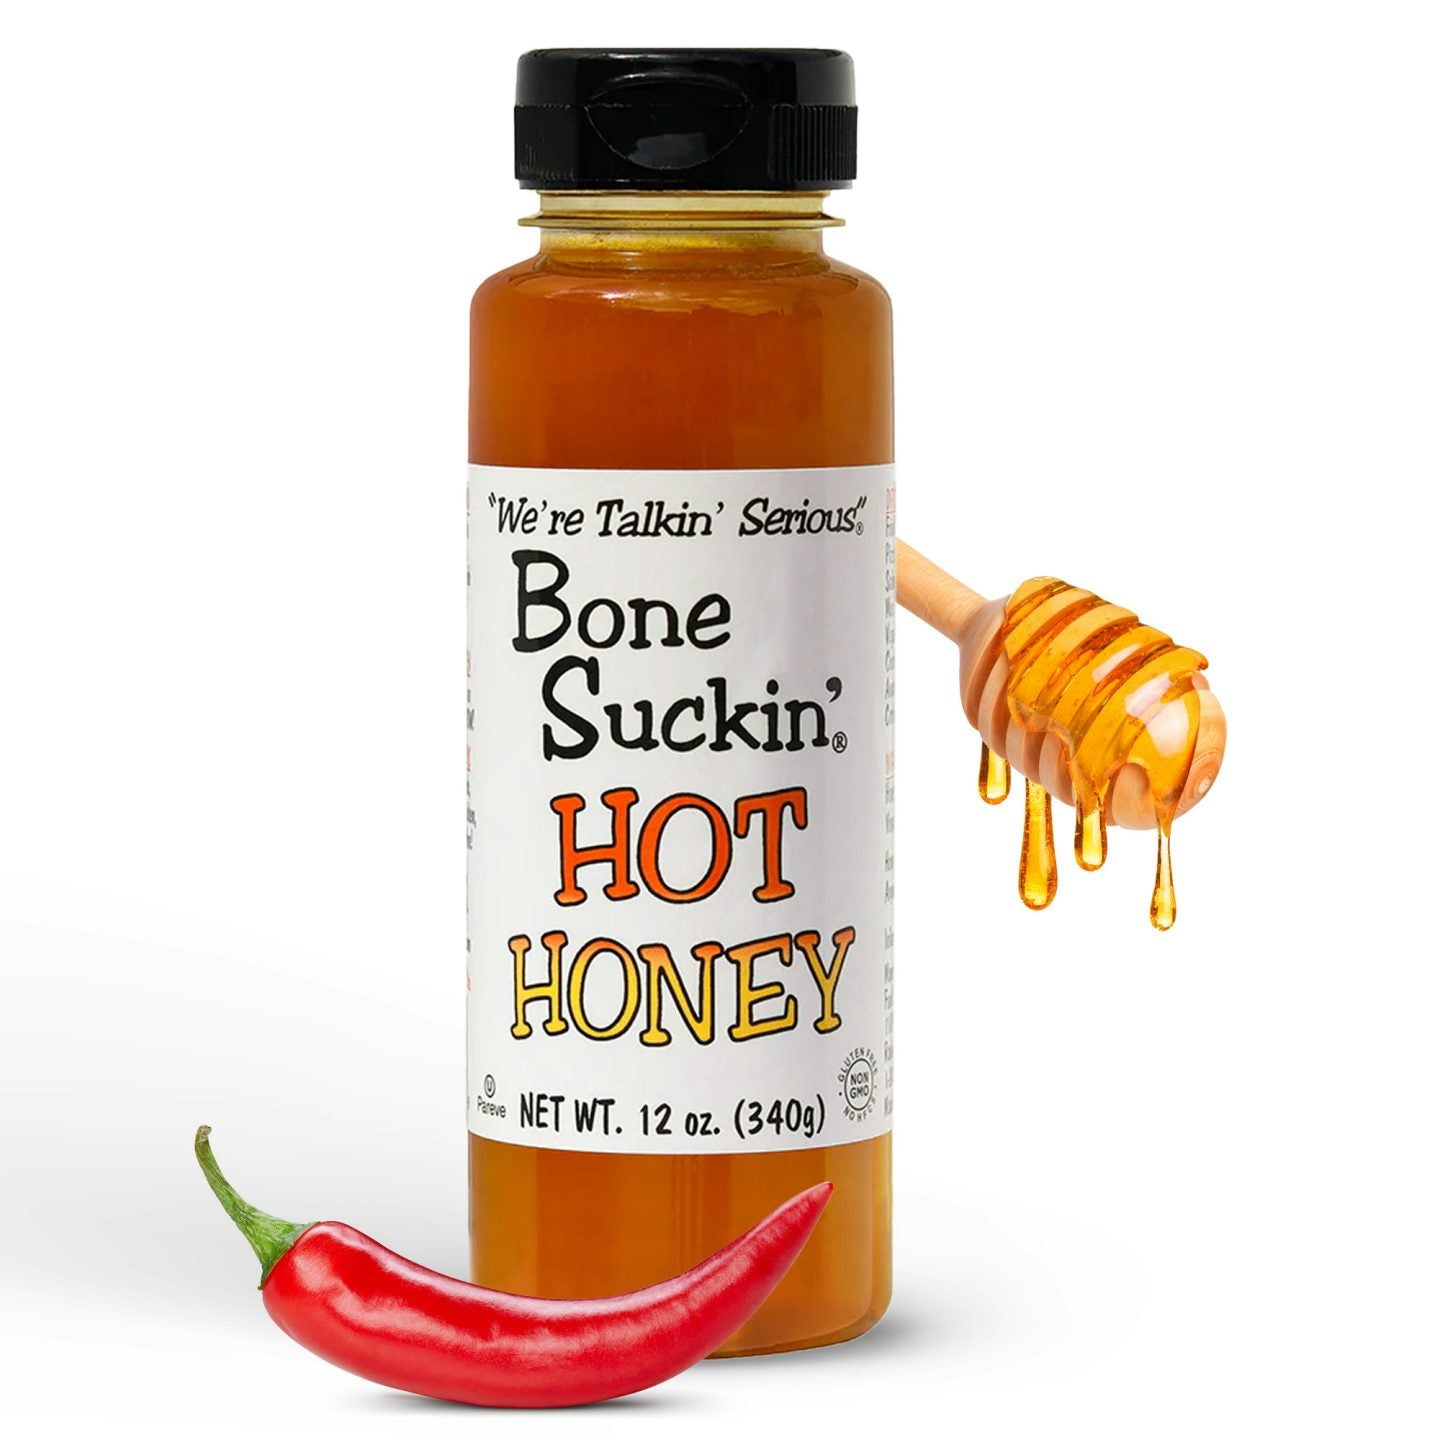 Bone Suckin' Hot Honey, 12 oz. bottle